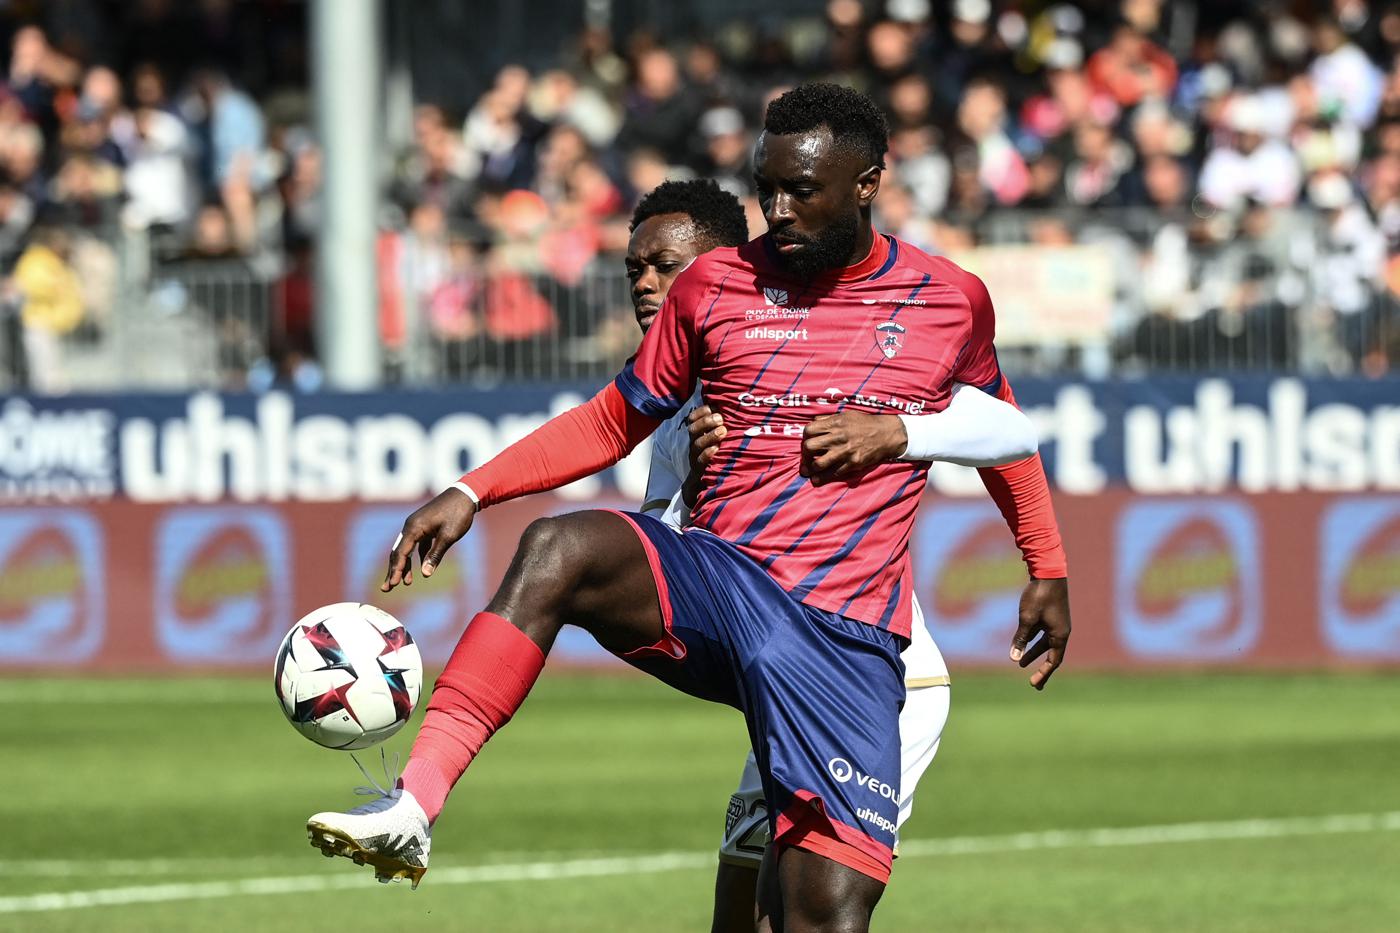 Clermont - Angers - 2:1. Französische Meisterschaft, 31. Runde. Spielbericht, Statistiken